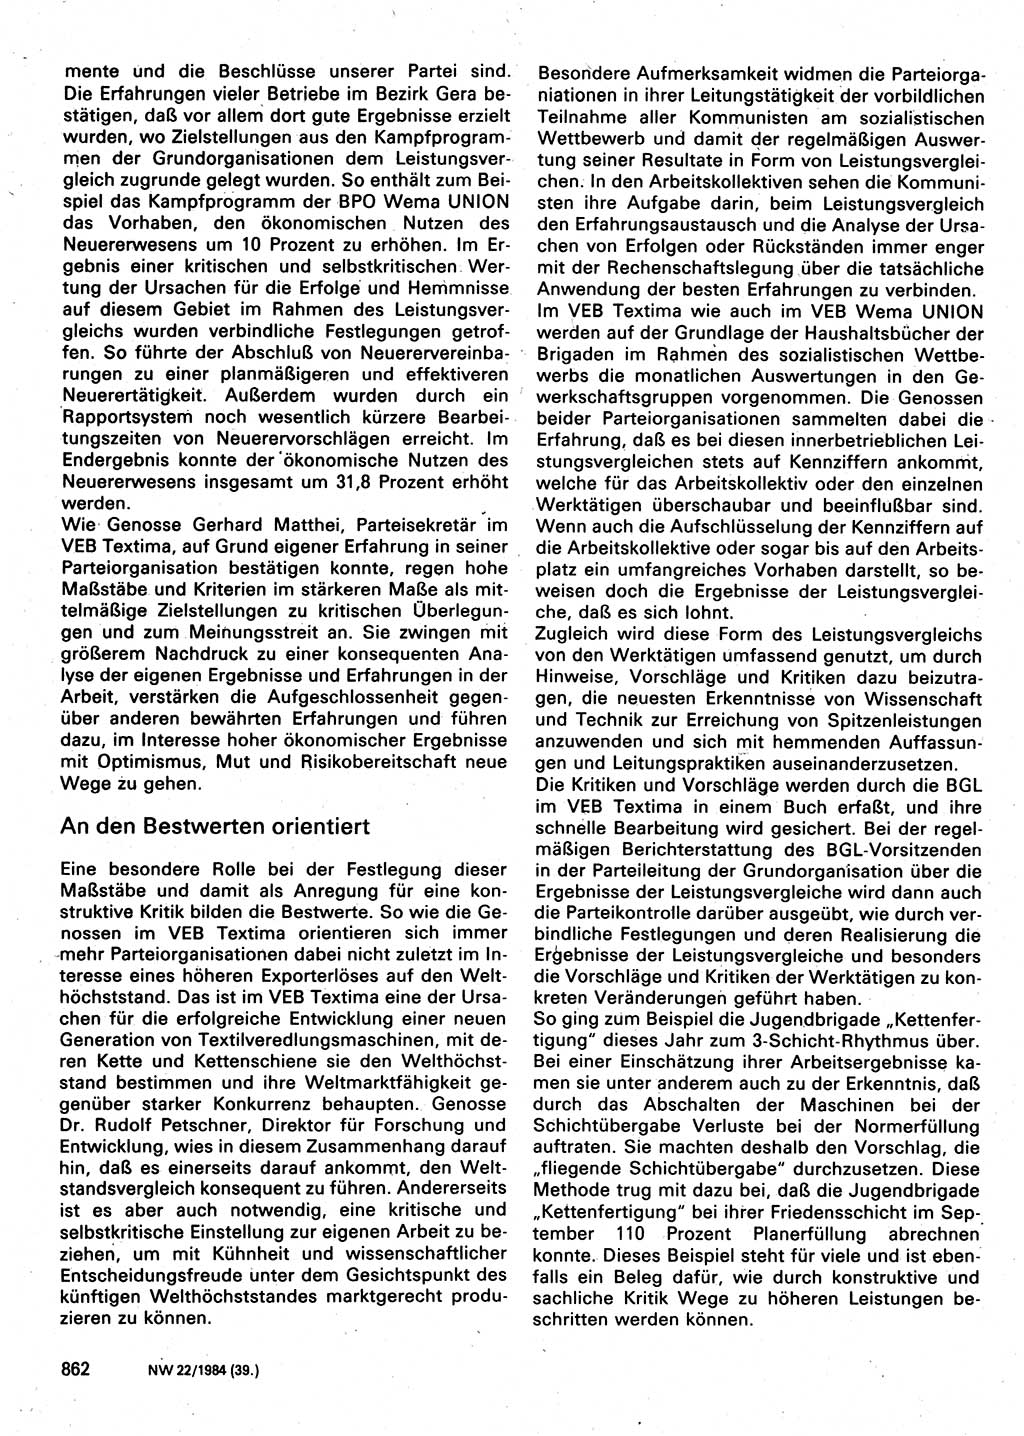 Neuer Weg (NW), Organ des Zentralkomitees (ZK) der SED (Sozialistische Einheitspartei Deutschlands) für Fragen des Parteilebens, 39. Jahrgang [Deutsche Demokratische Republik (DDR)] 1984, Seite 862 (NW ZK SED DDR 1984, S. 862)